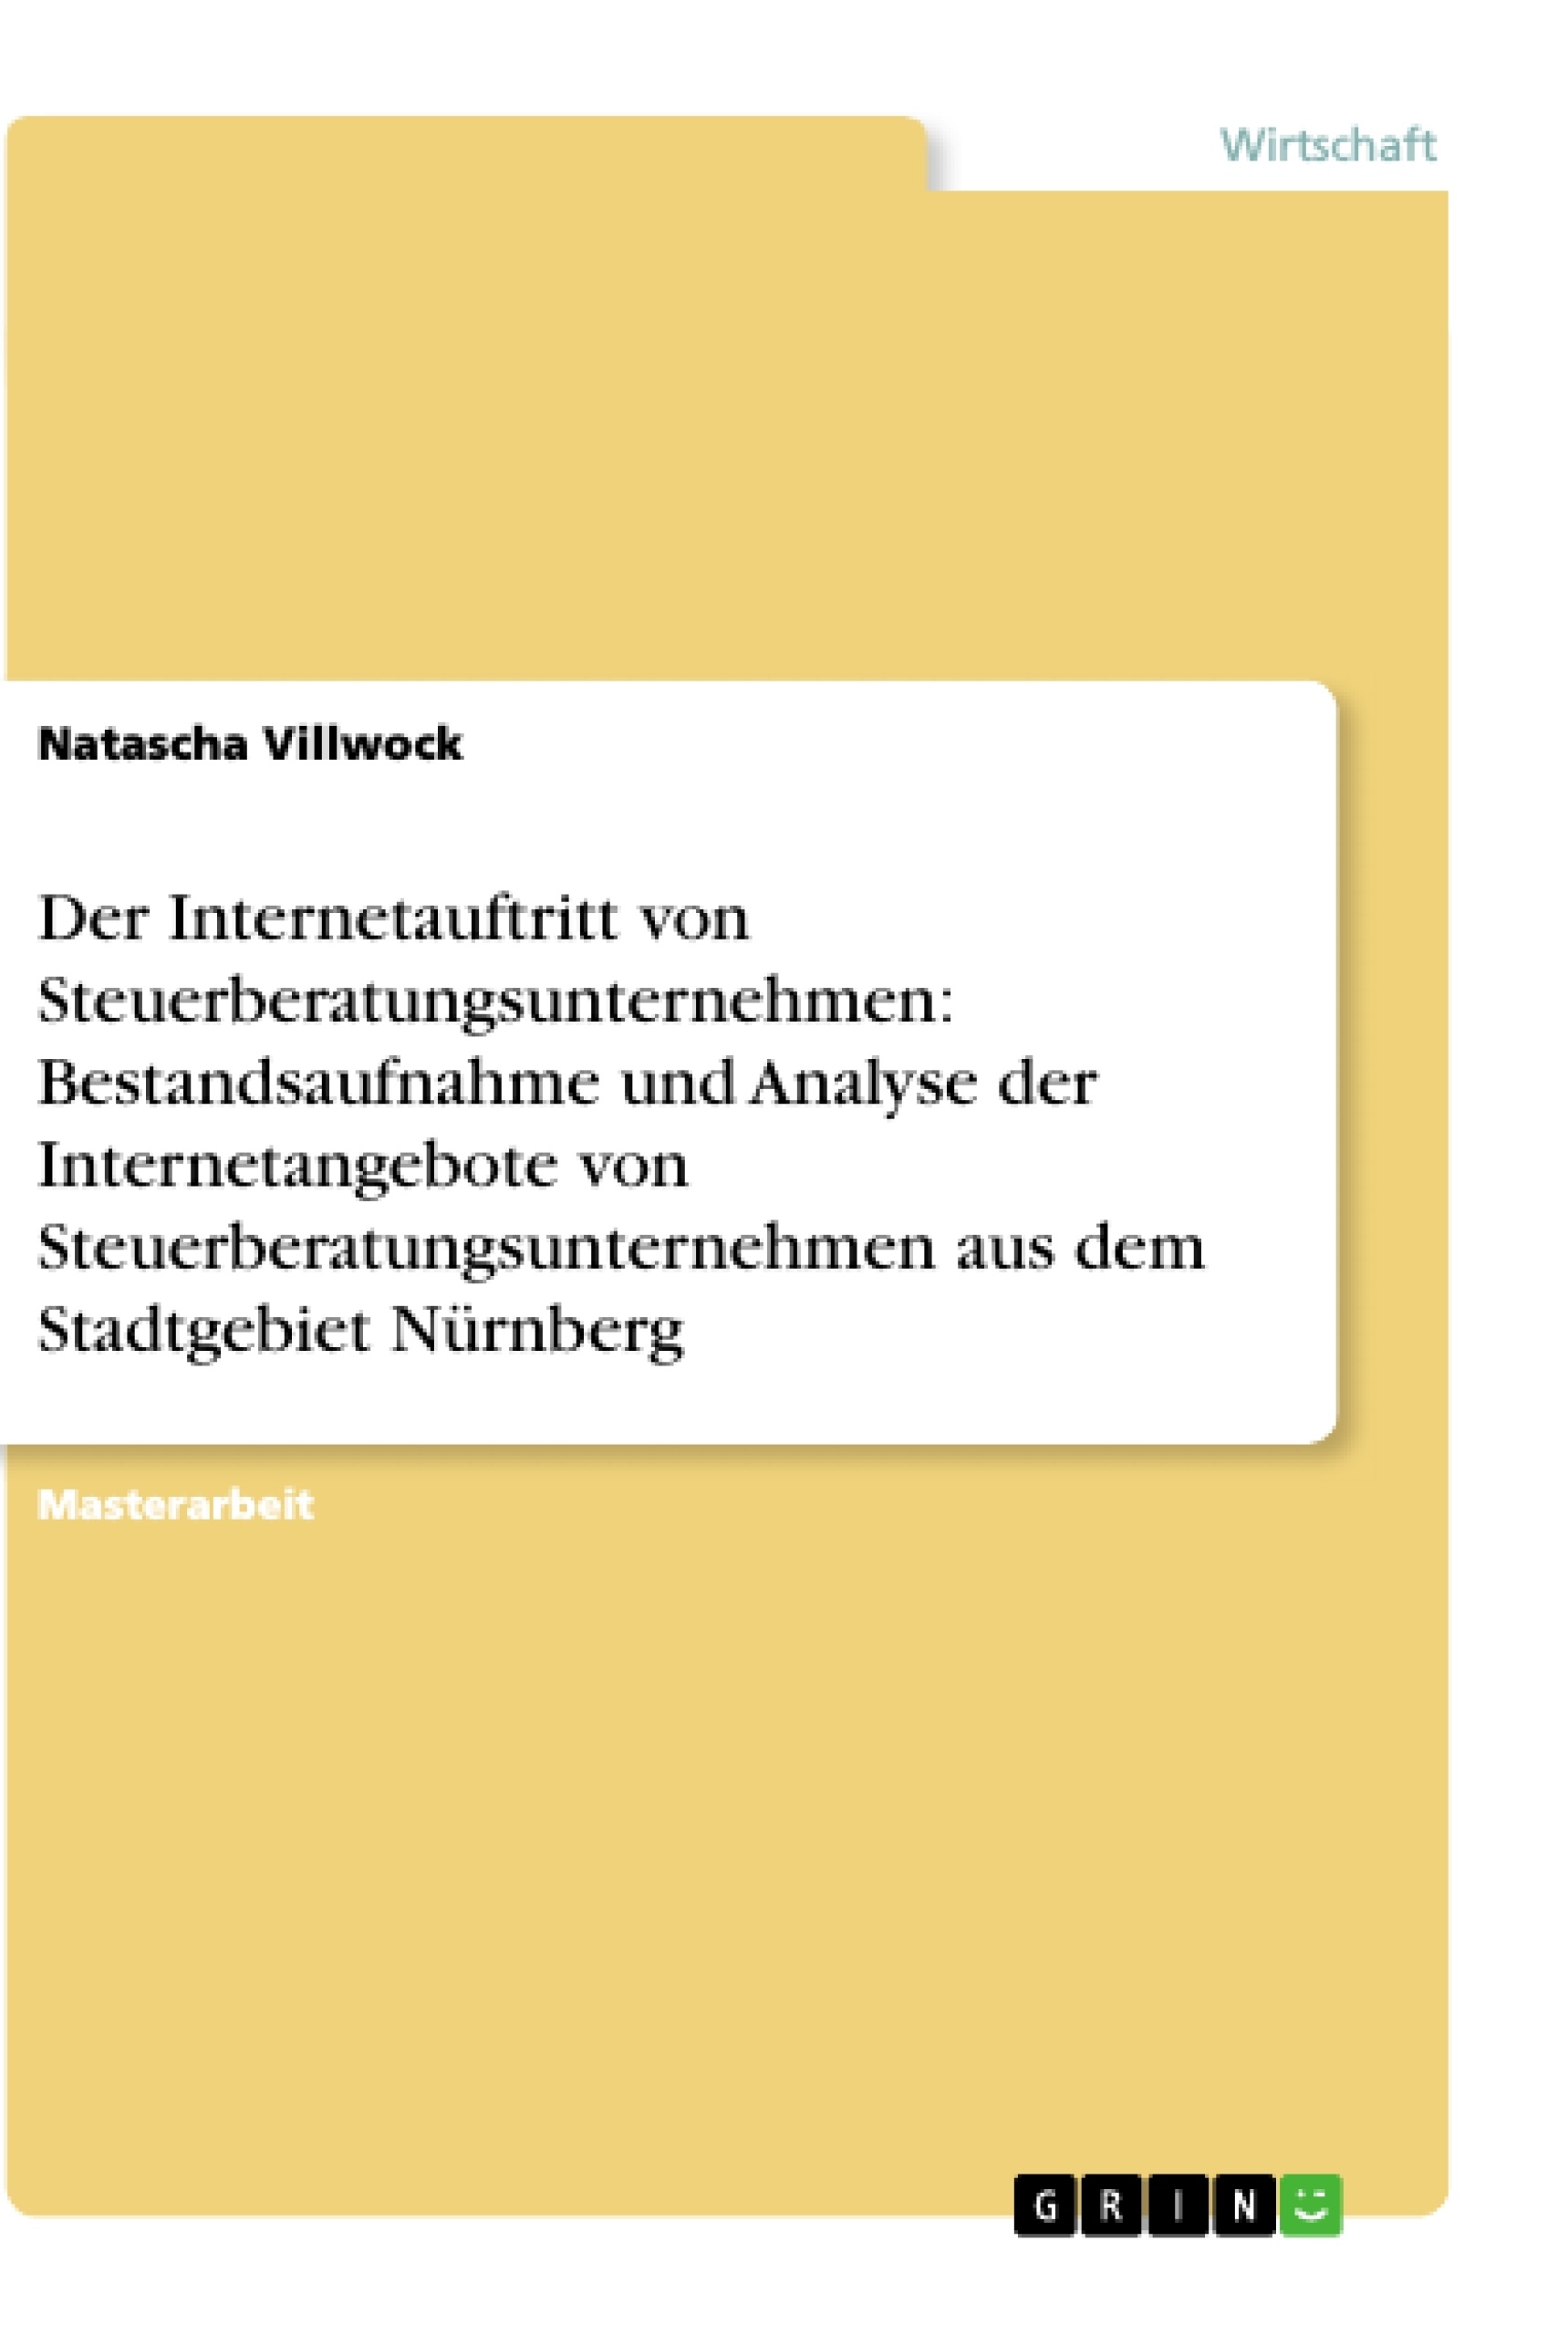 Title: Der Internetauftritt von Steuerberatungsunternehmen: Bestandsaufnahme und Analyse der Internetangebote von Steuerberatungsunternehmen aus dem Stadtgebiet Nürnberg